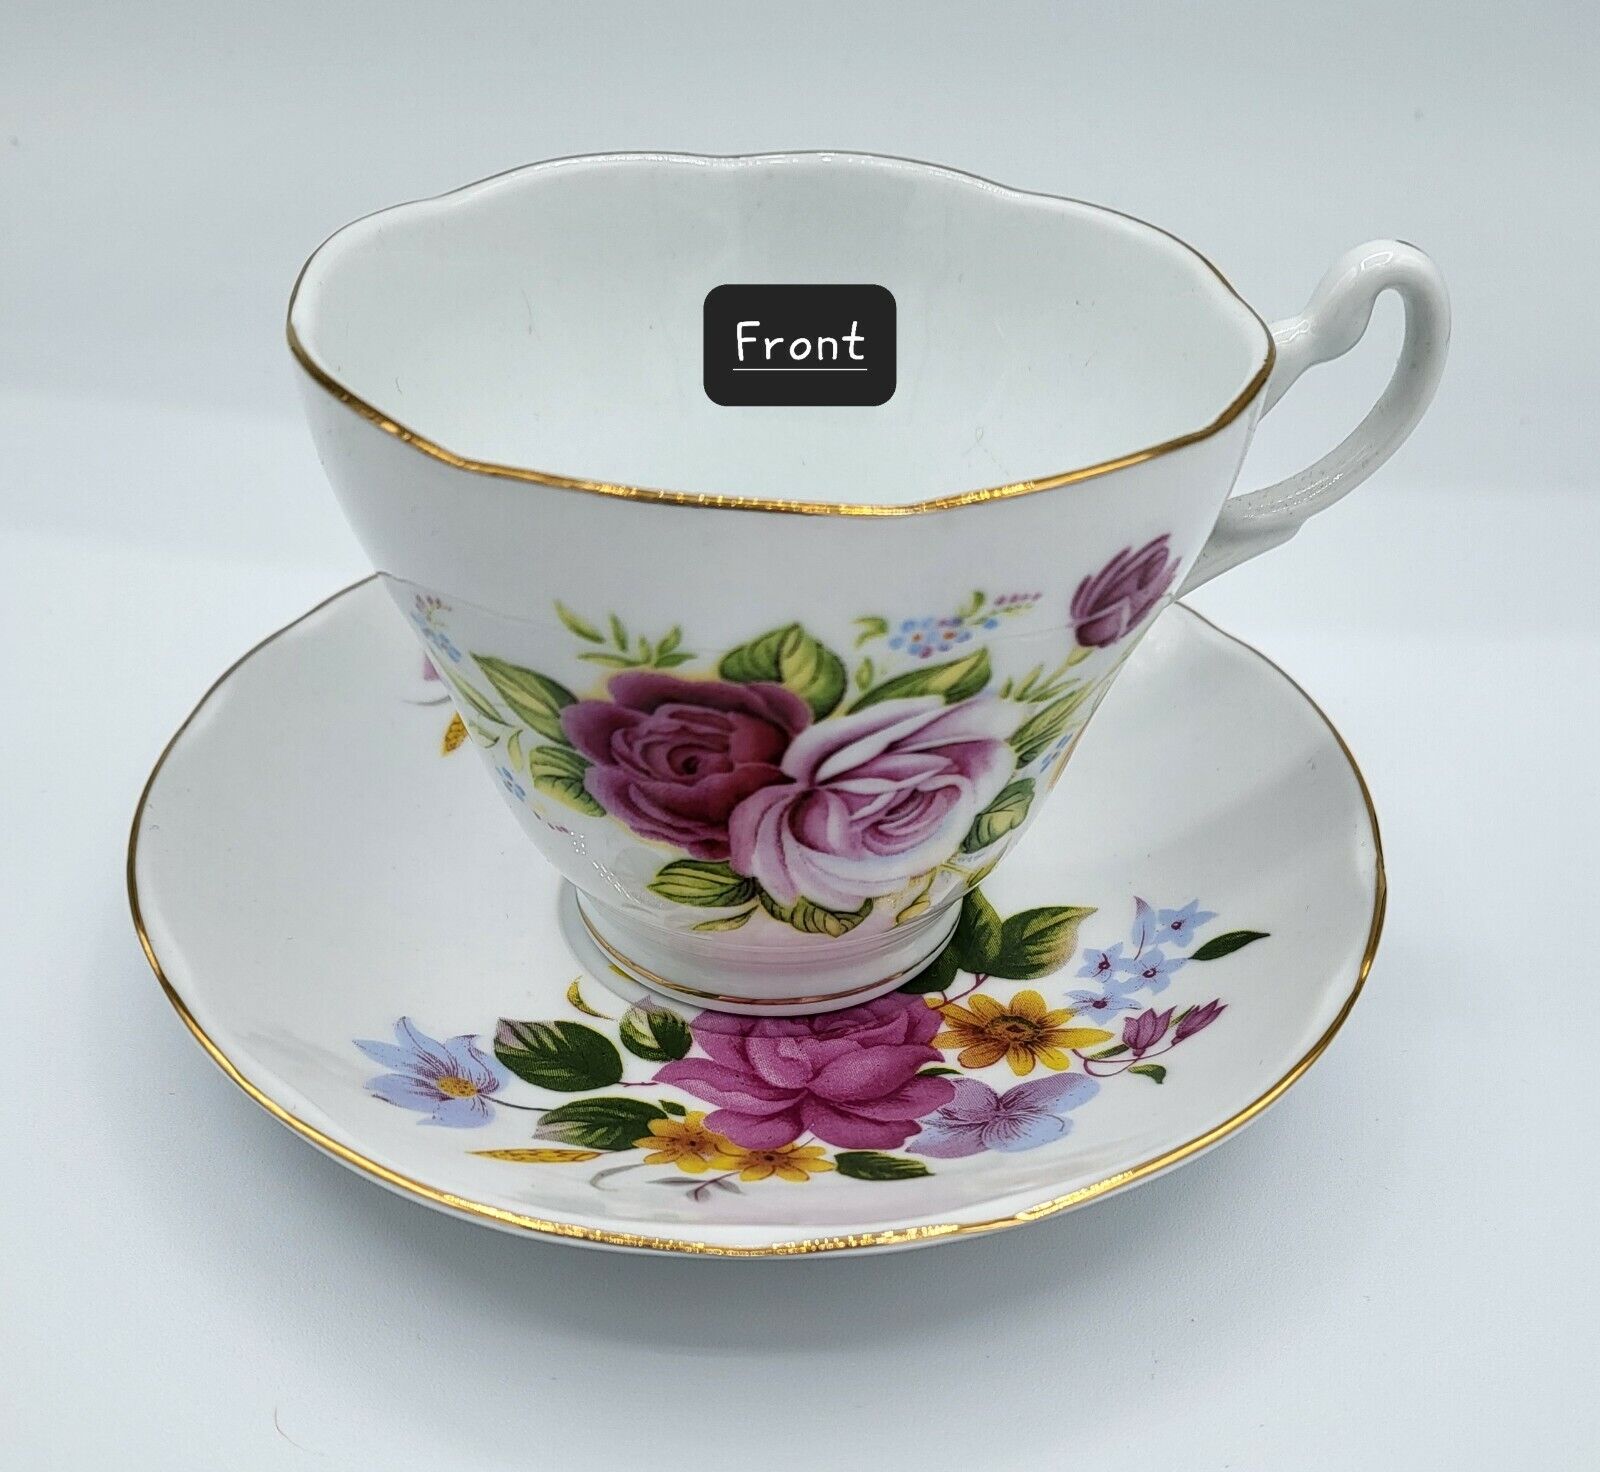 Vintage Floral Rose Teacup and Saucer Vintage Rose Teacup Vintage Teacup